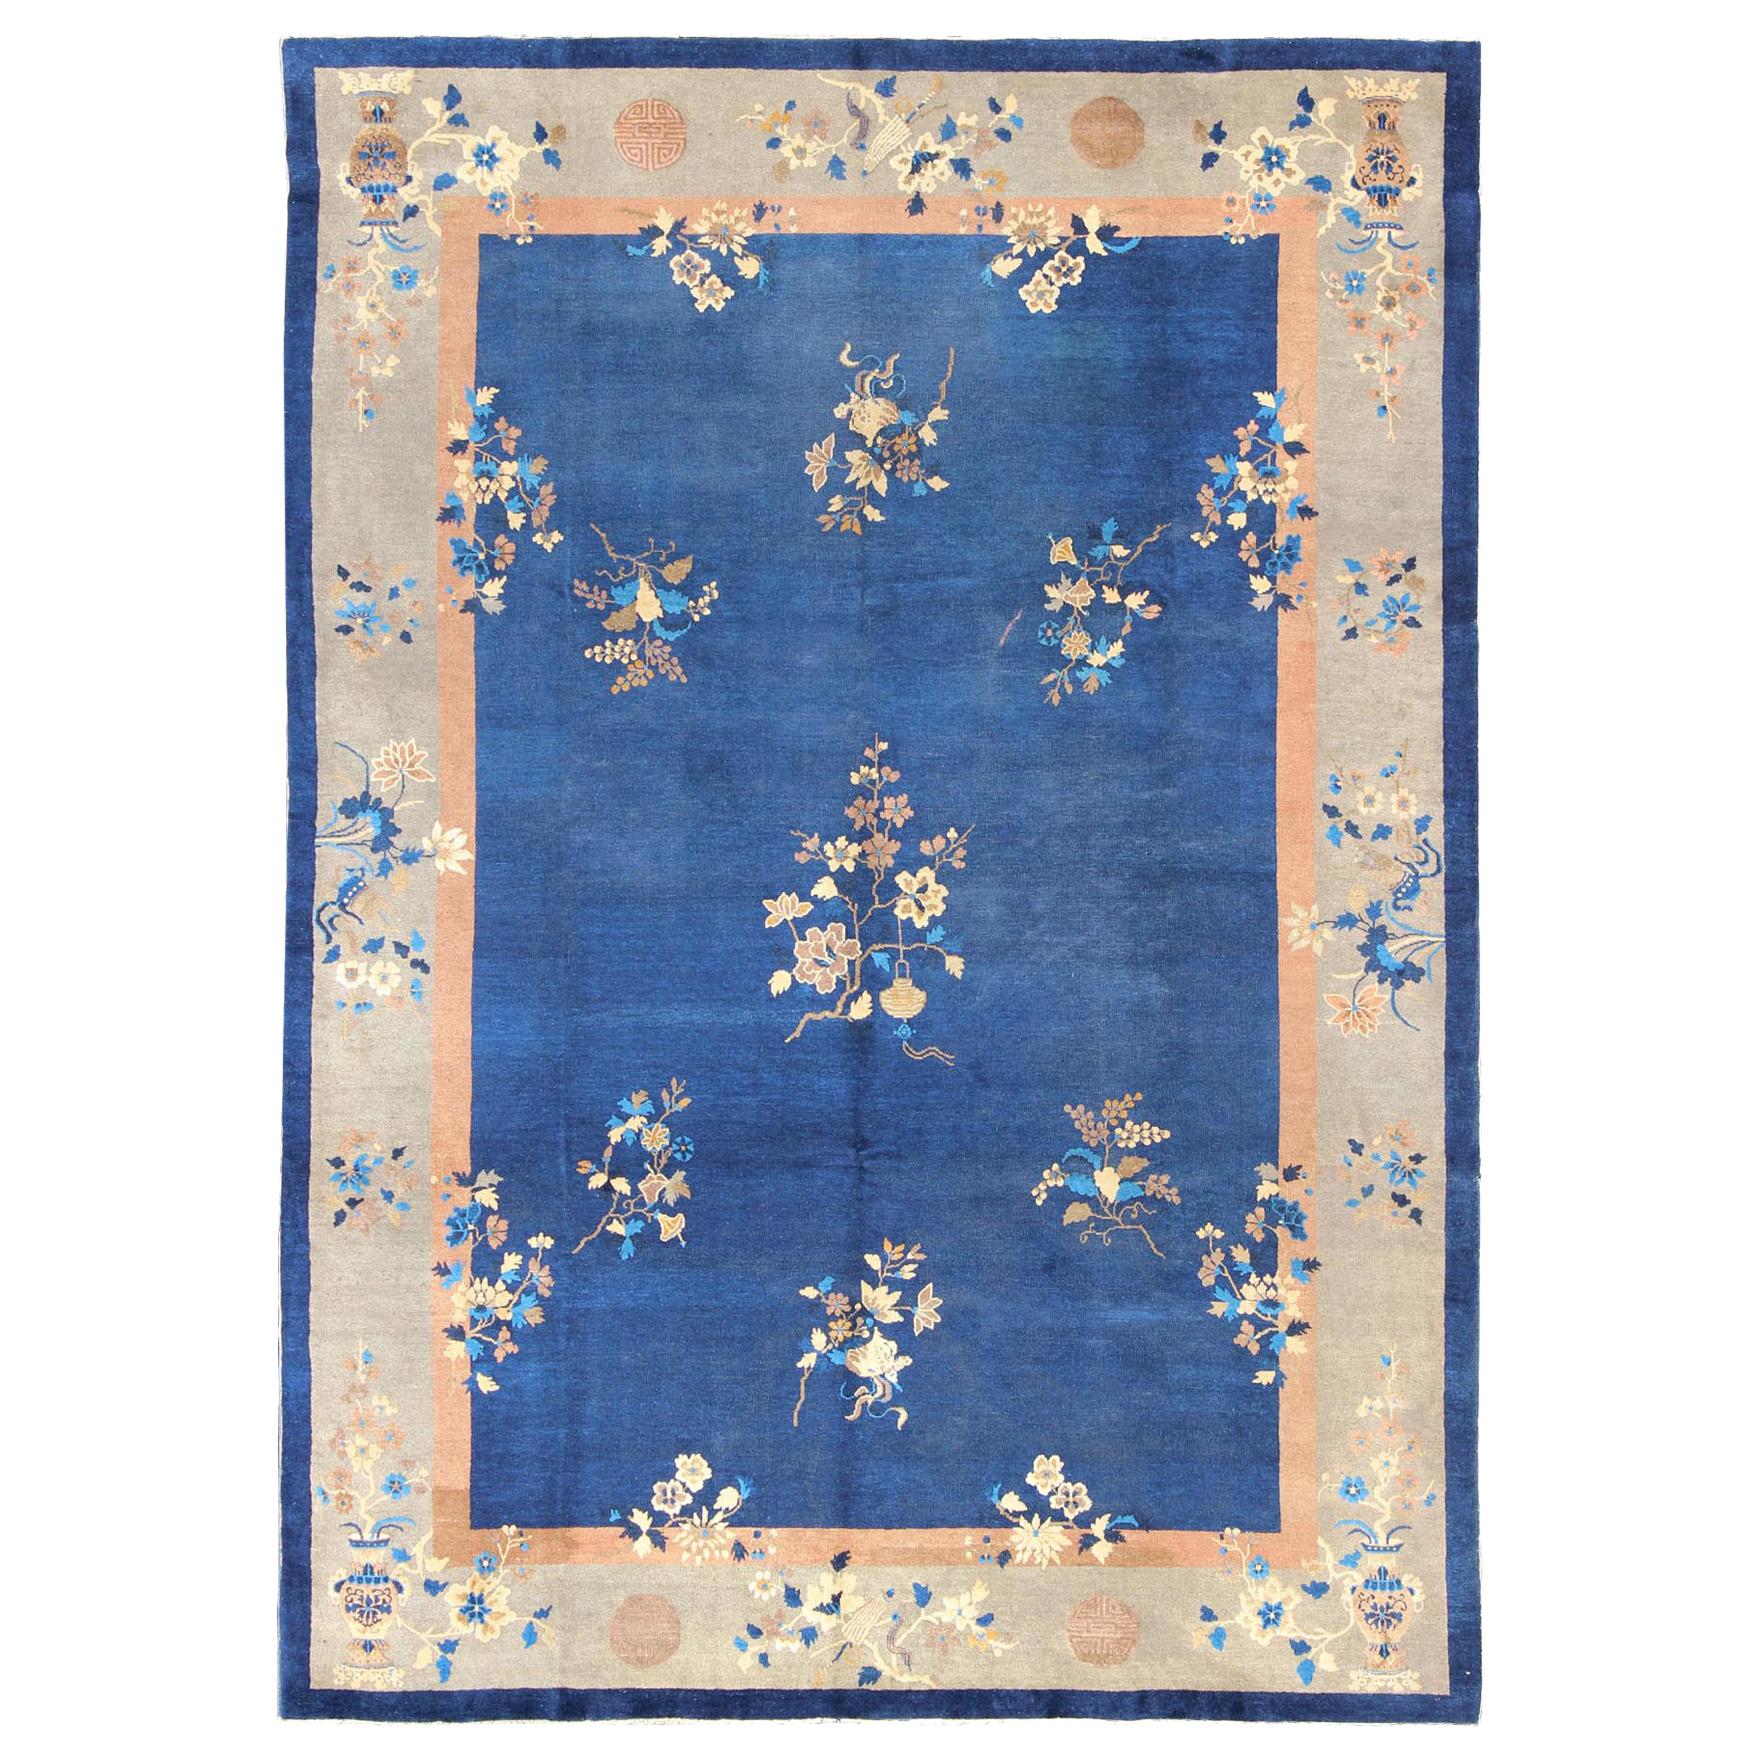 Großer antiker chinesischer Pecking-Teppich mit Blumen und Vasen in Marineblau und Tan